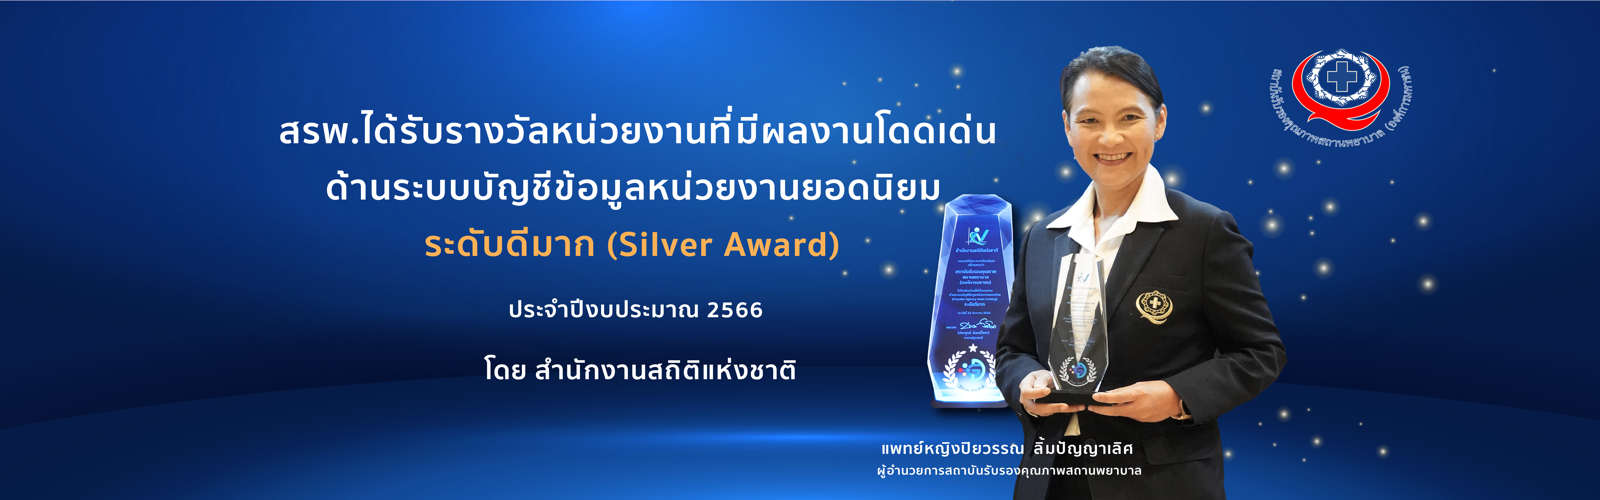 สรพ.ได้รับรางวัลหน่วยงานที่มีผลงานโดดเด่นด้านระบบบัญชีข้อมูลหน่วยงานยอดนิยม ระดับดีมาก (Silver Award) 